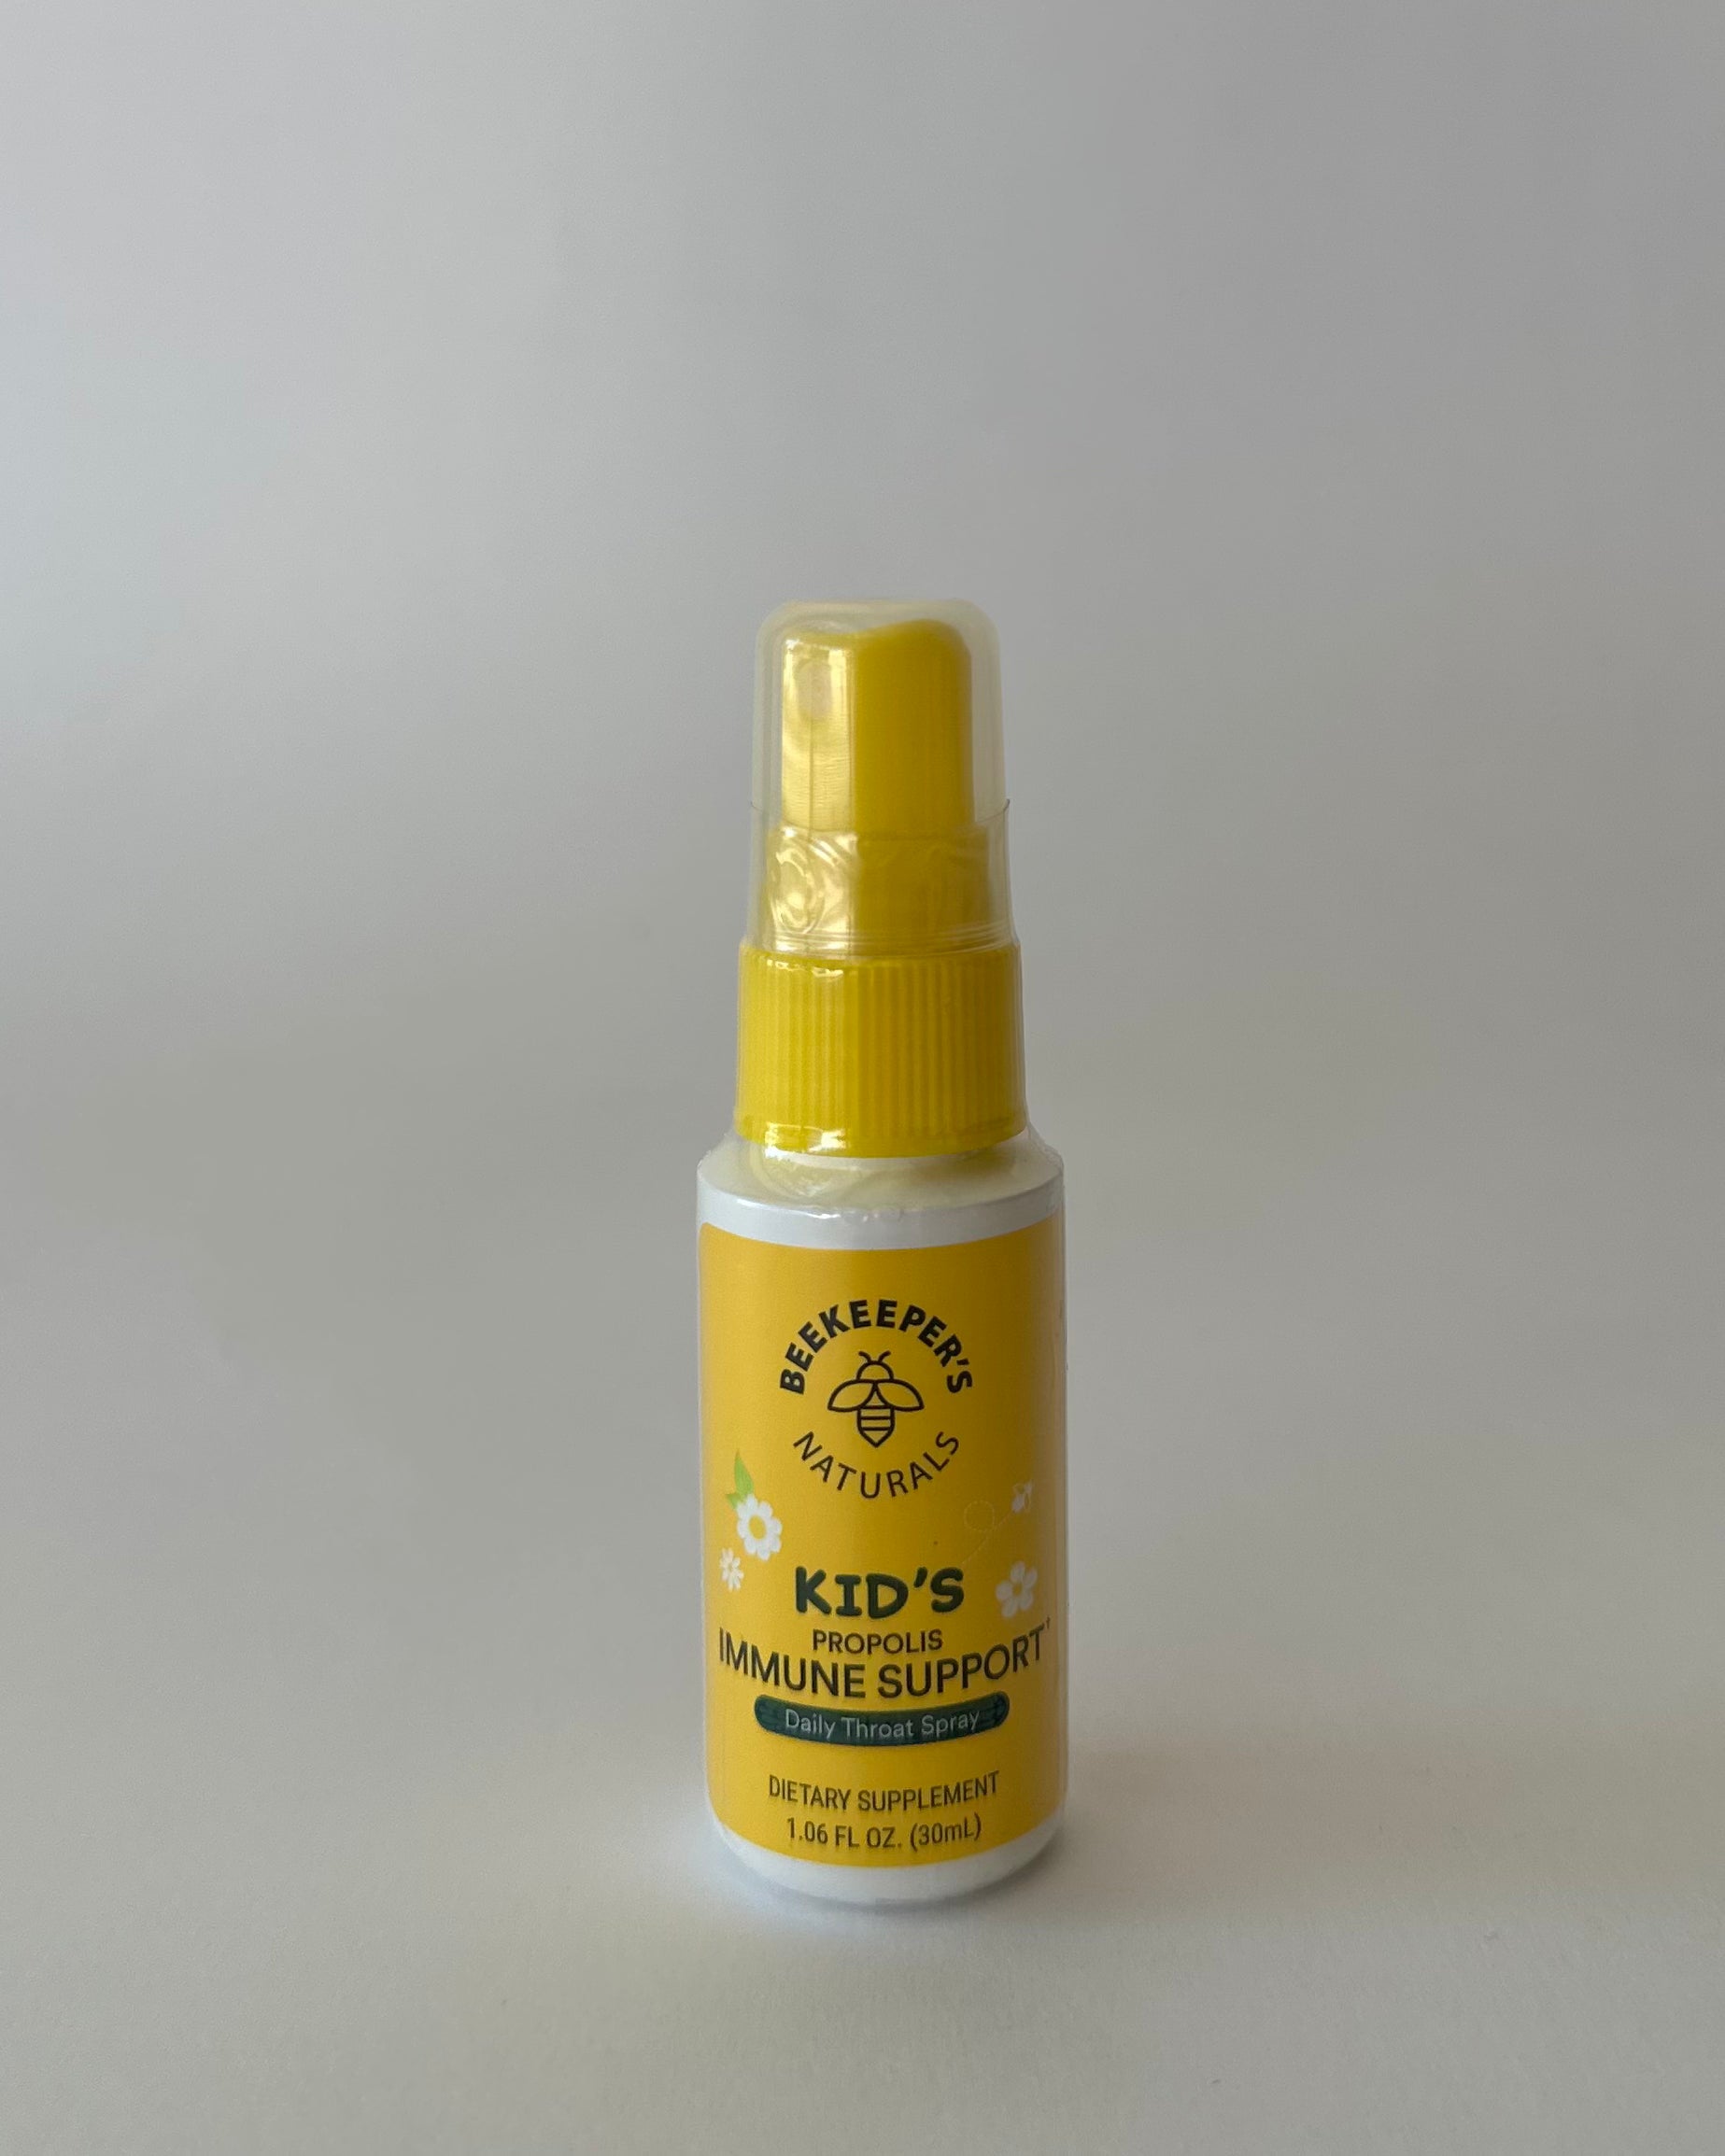 Beekeeper's Naturals - Propolis Throat Spray Kid's